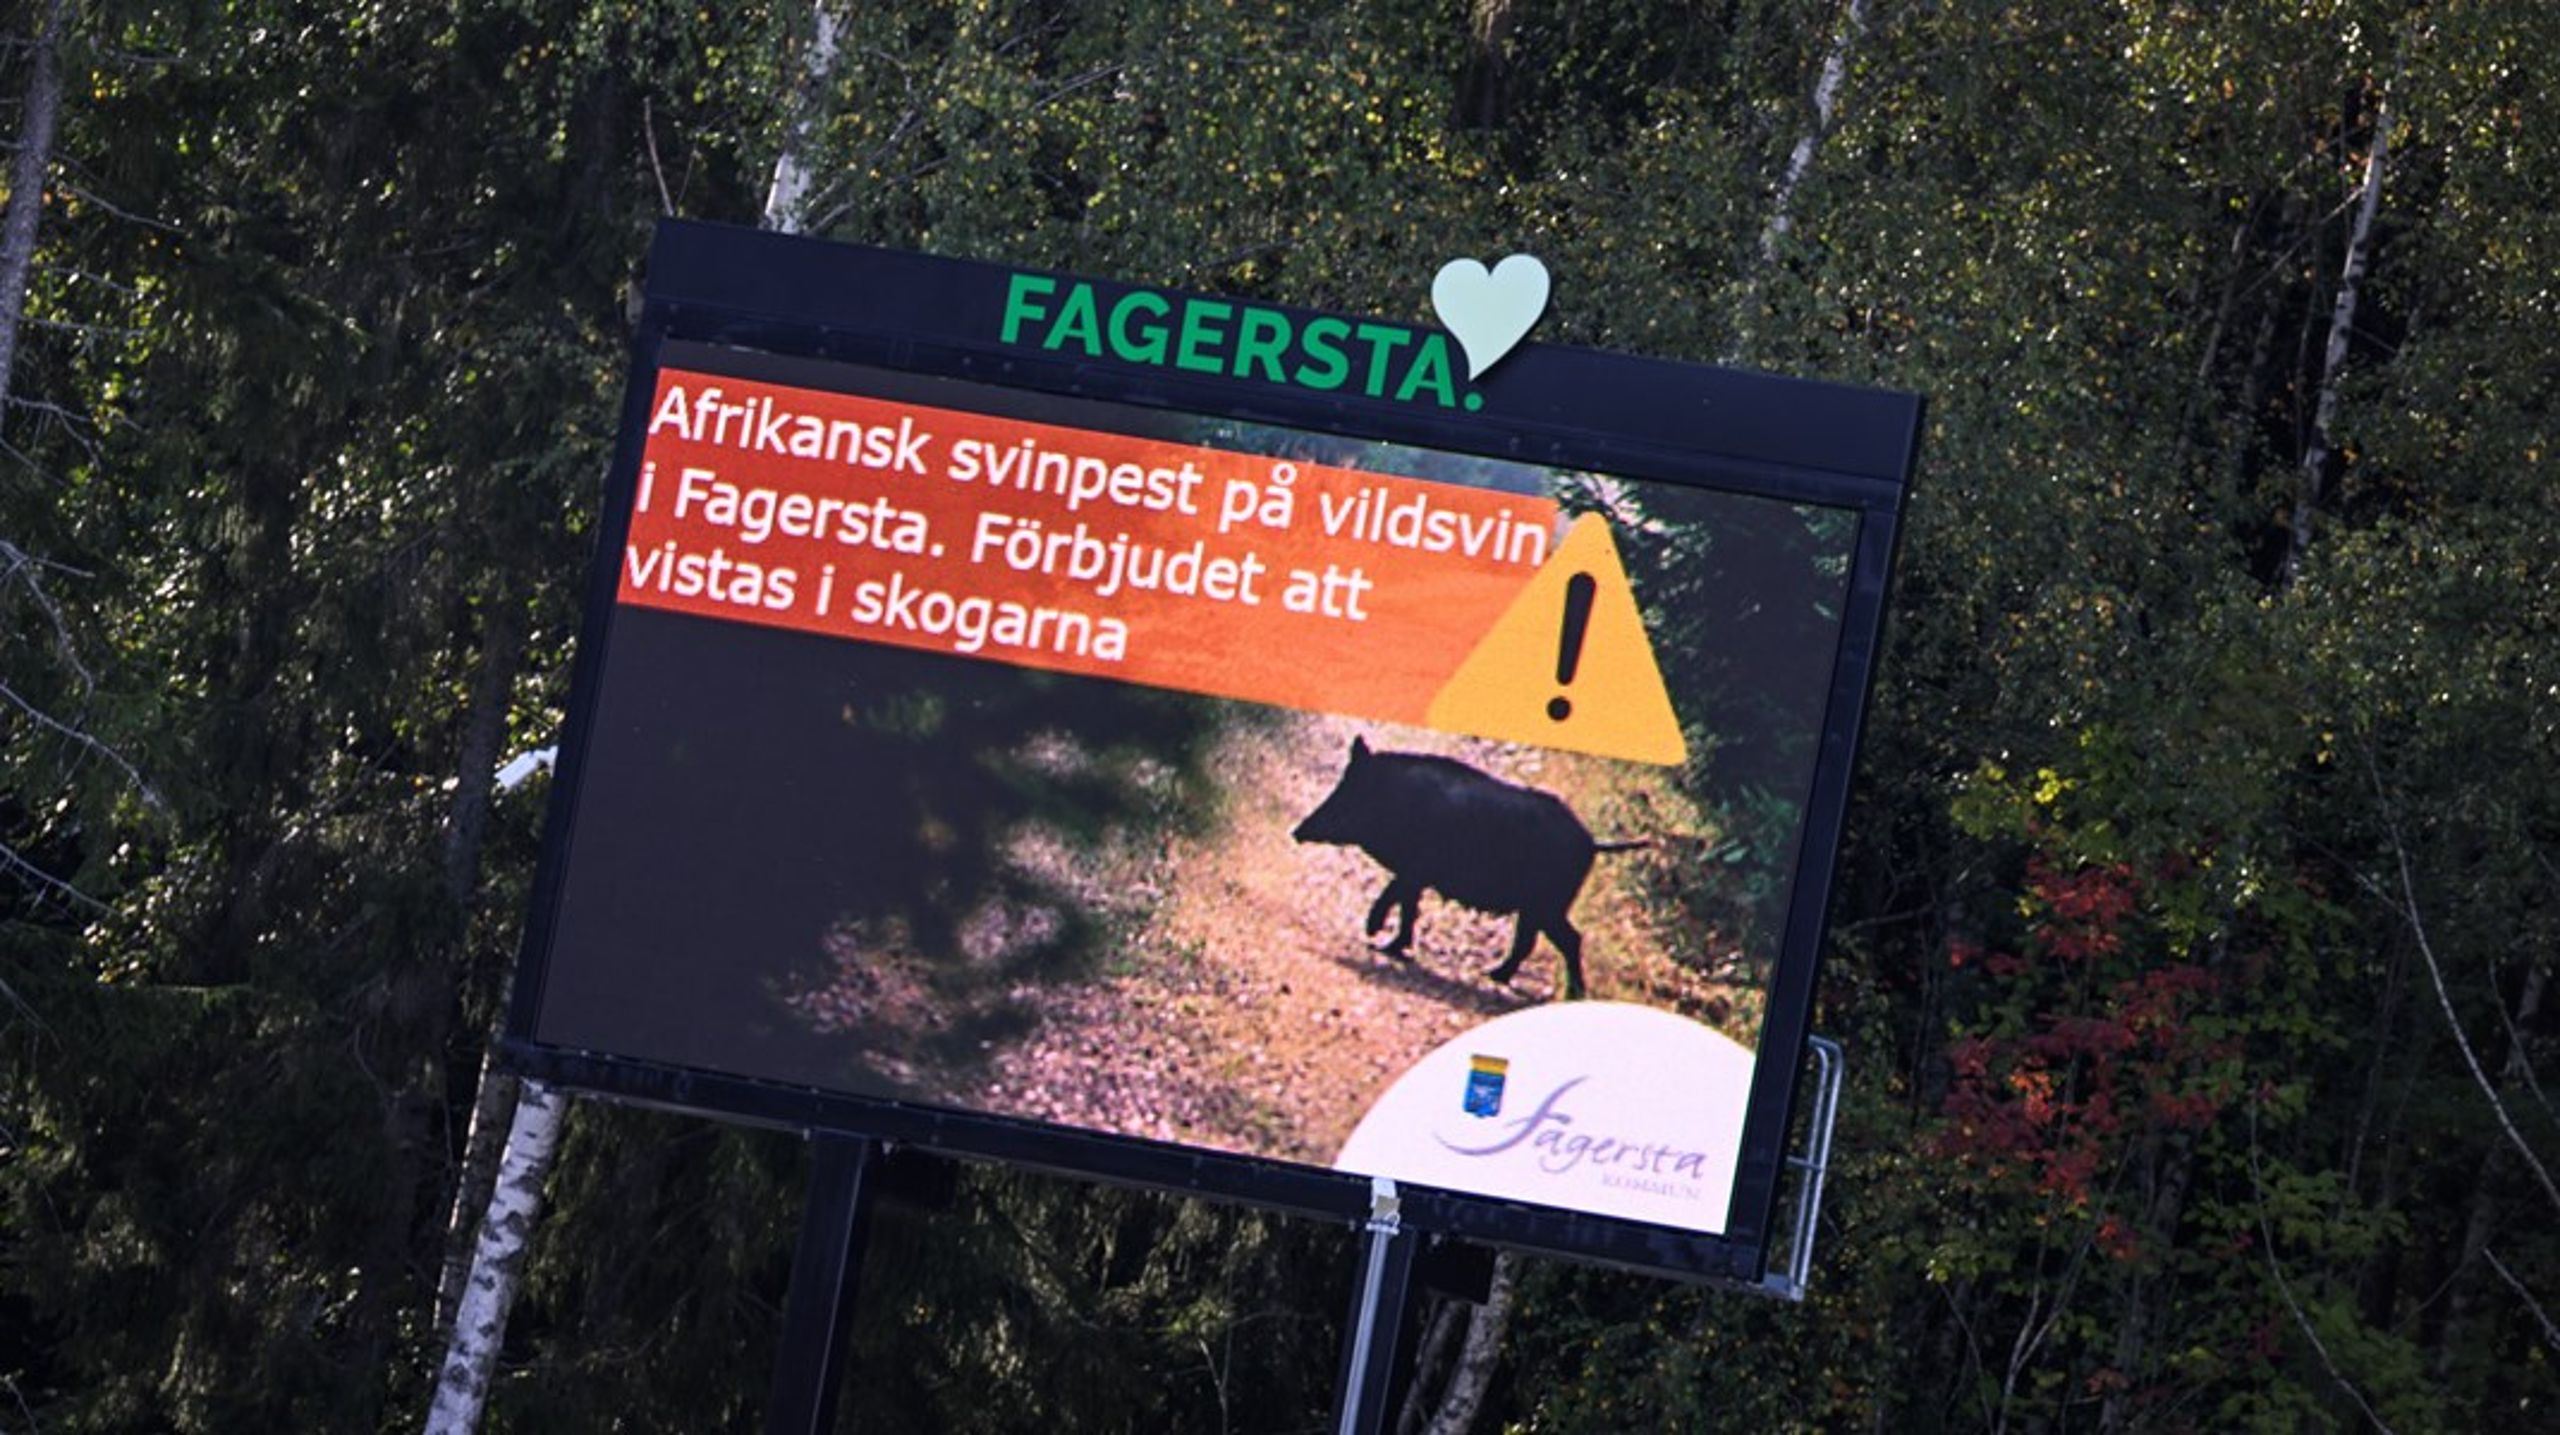 Förekomsten av vildsvin i den svenska naturen måste begränsas, menar debattören.